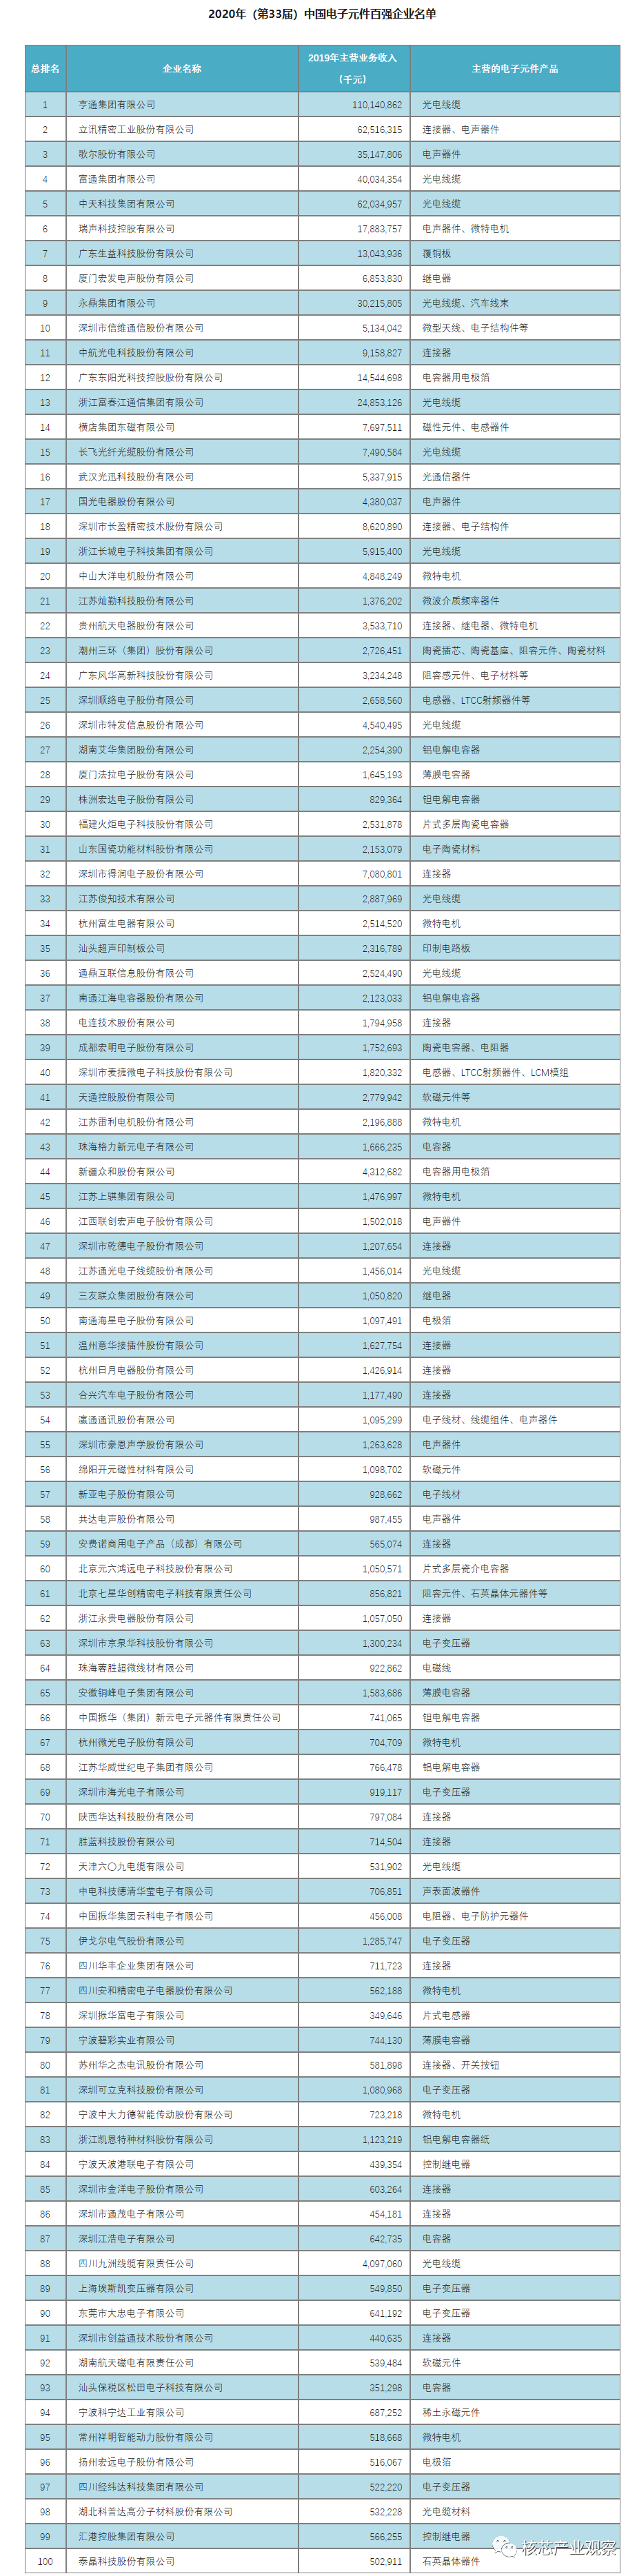 半岛官方网站2020年中国电子元件百强企业排名(图1)